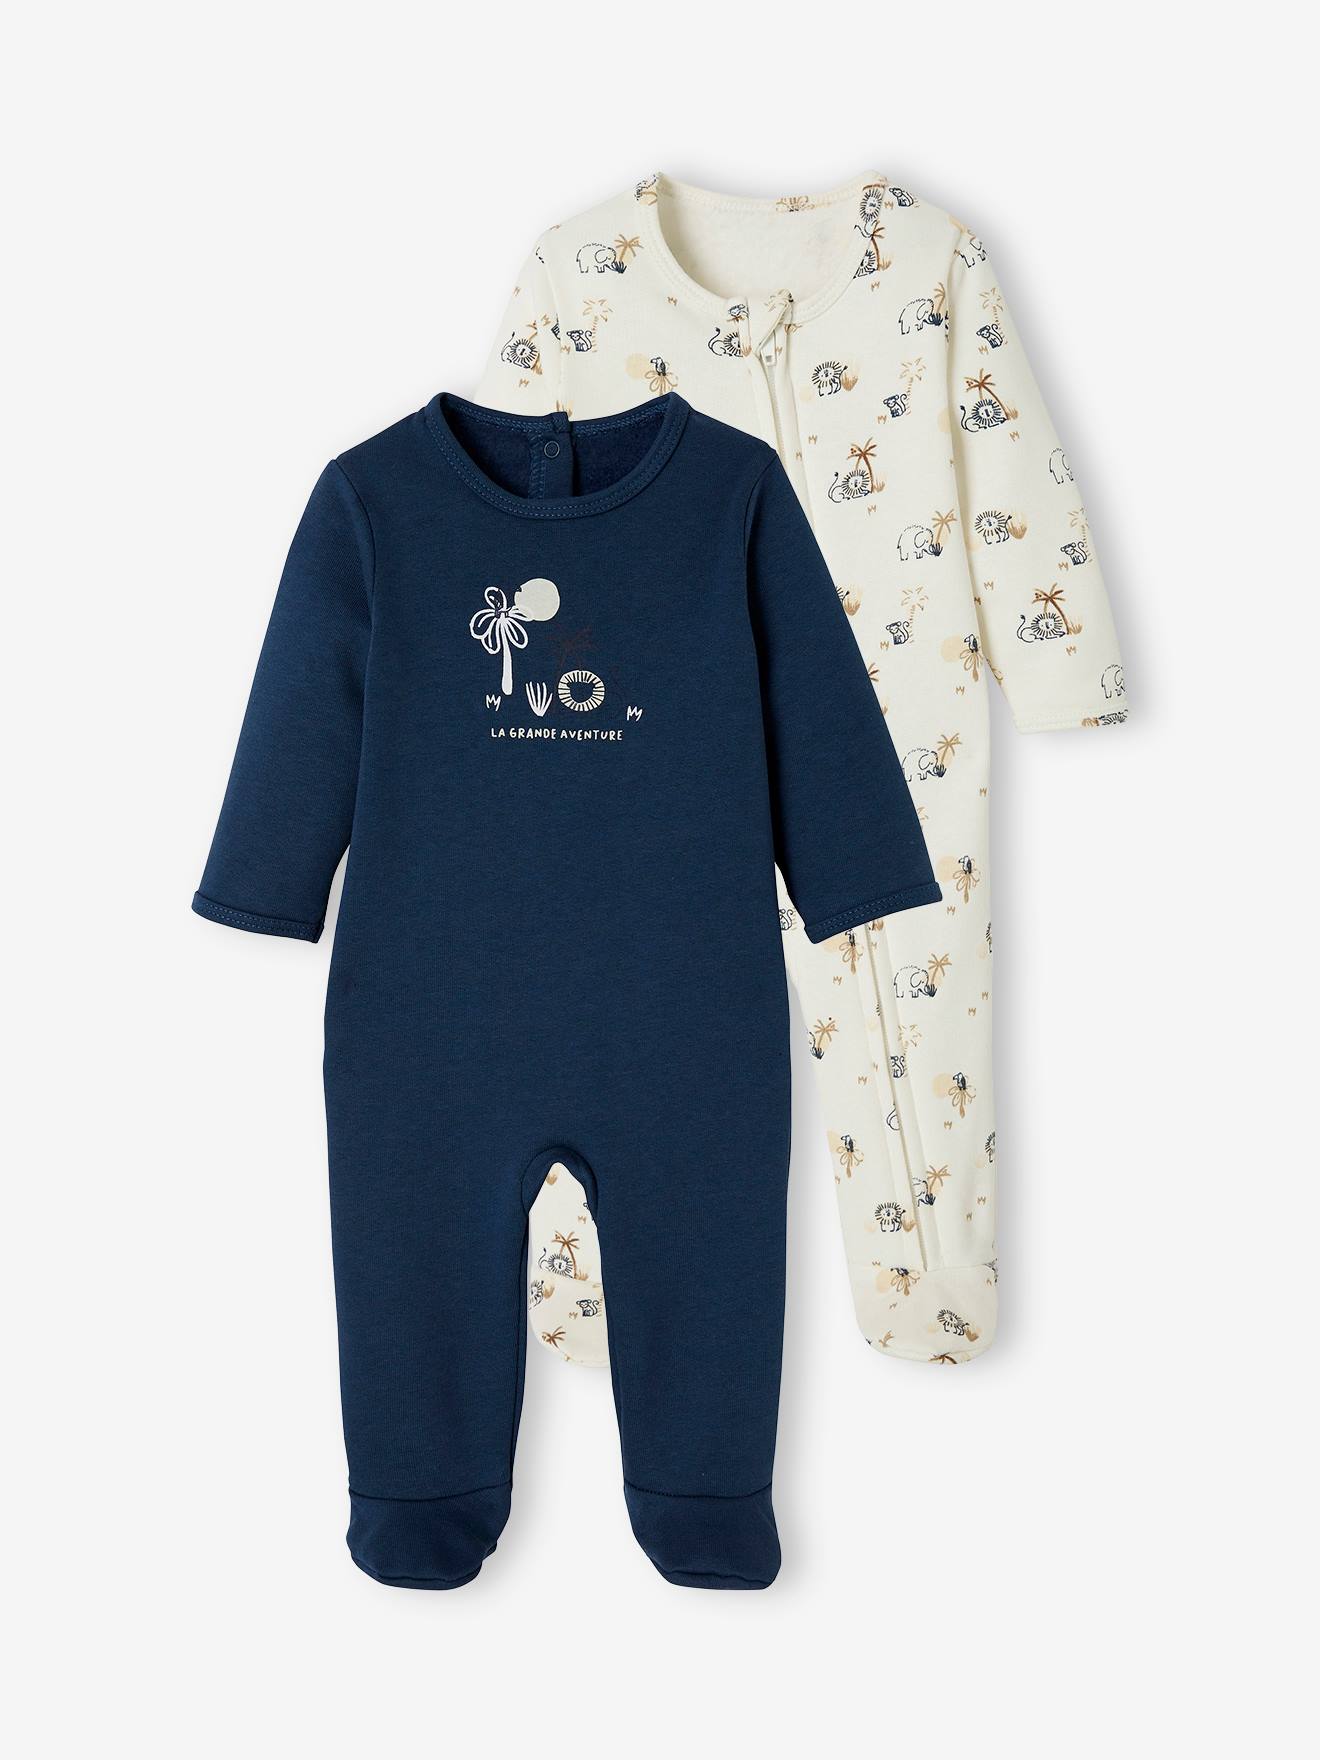 Lot de 2 pyjamas bébé en molleton ouverture zippée lot bleu jean